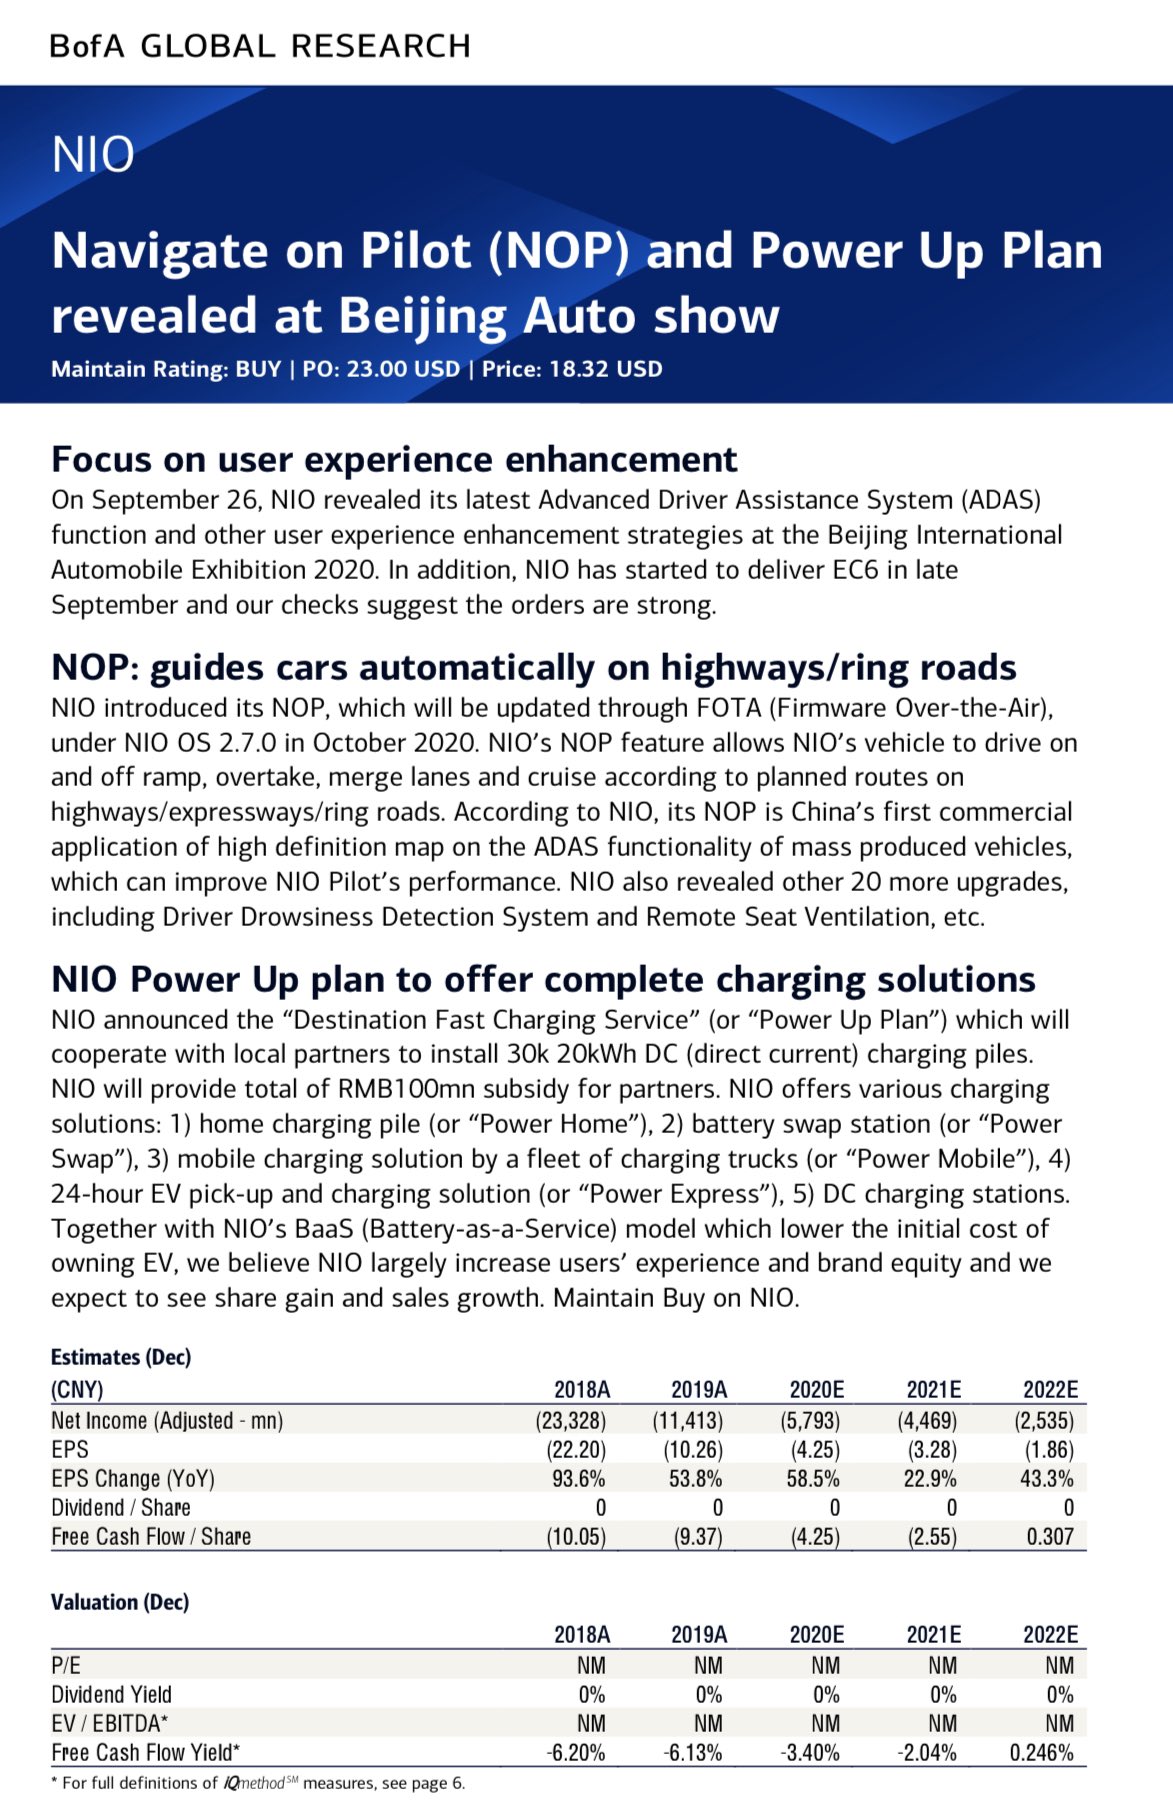 Nio (NIO) Stock Target Price Raised to 23, New Power Up Plan and Smart